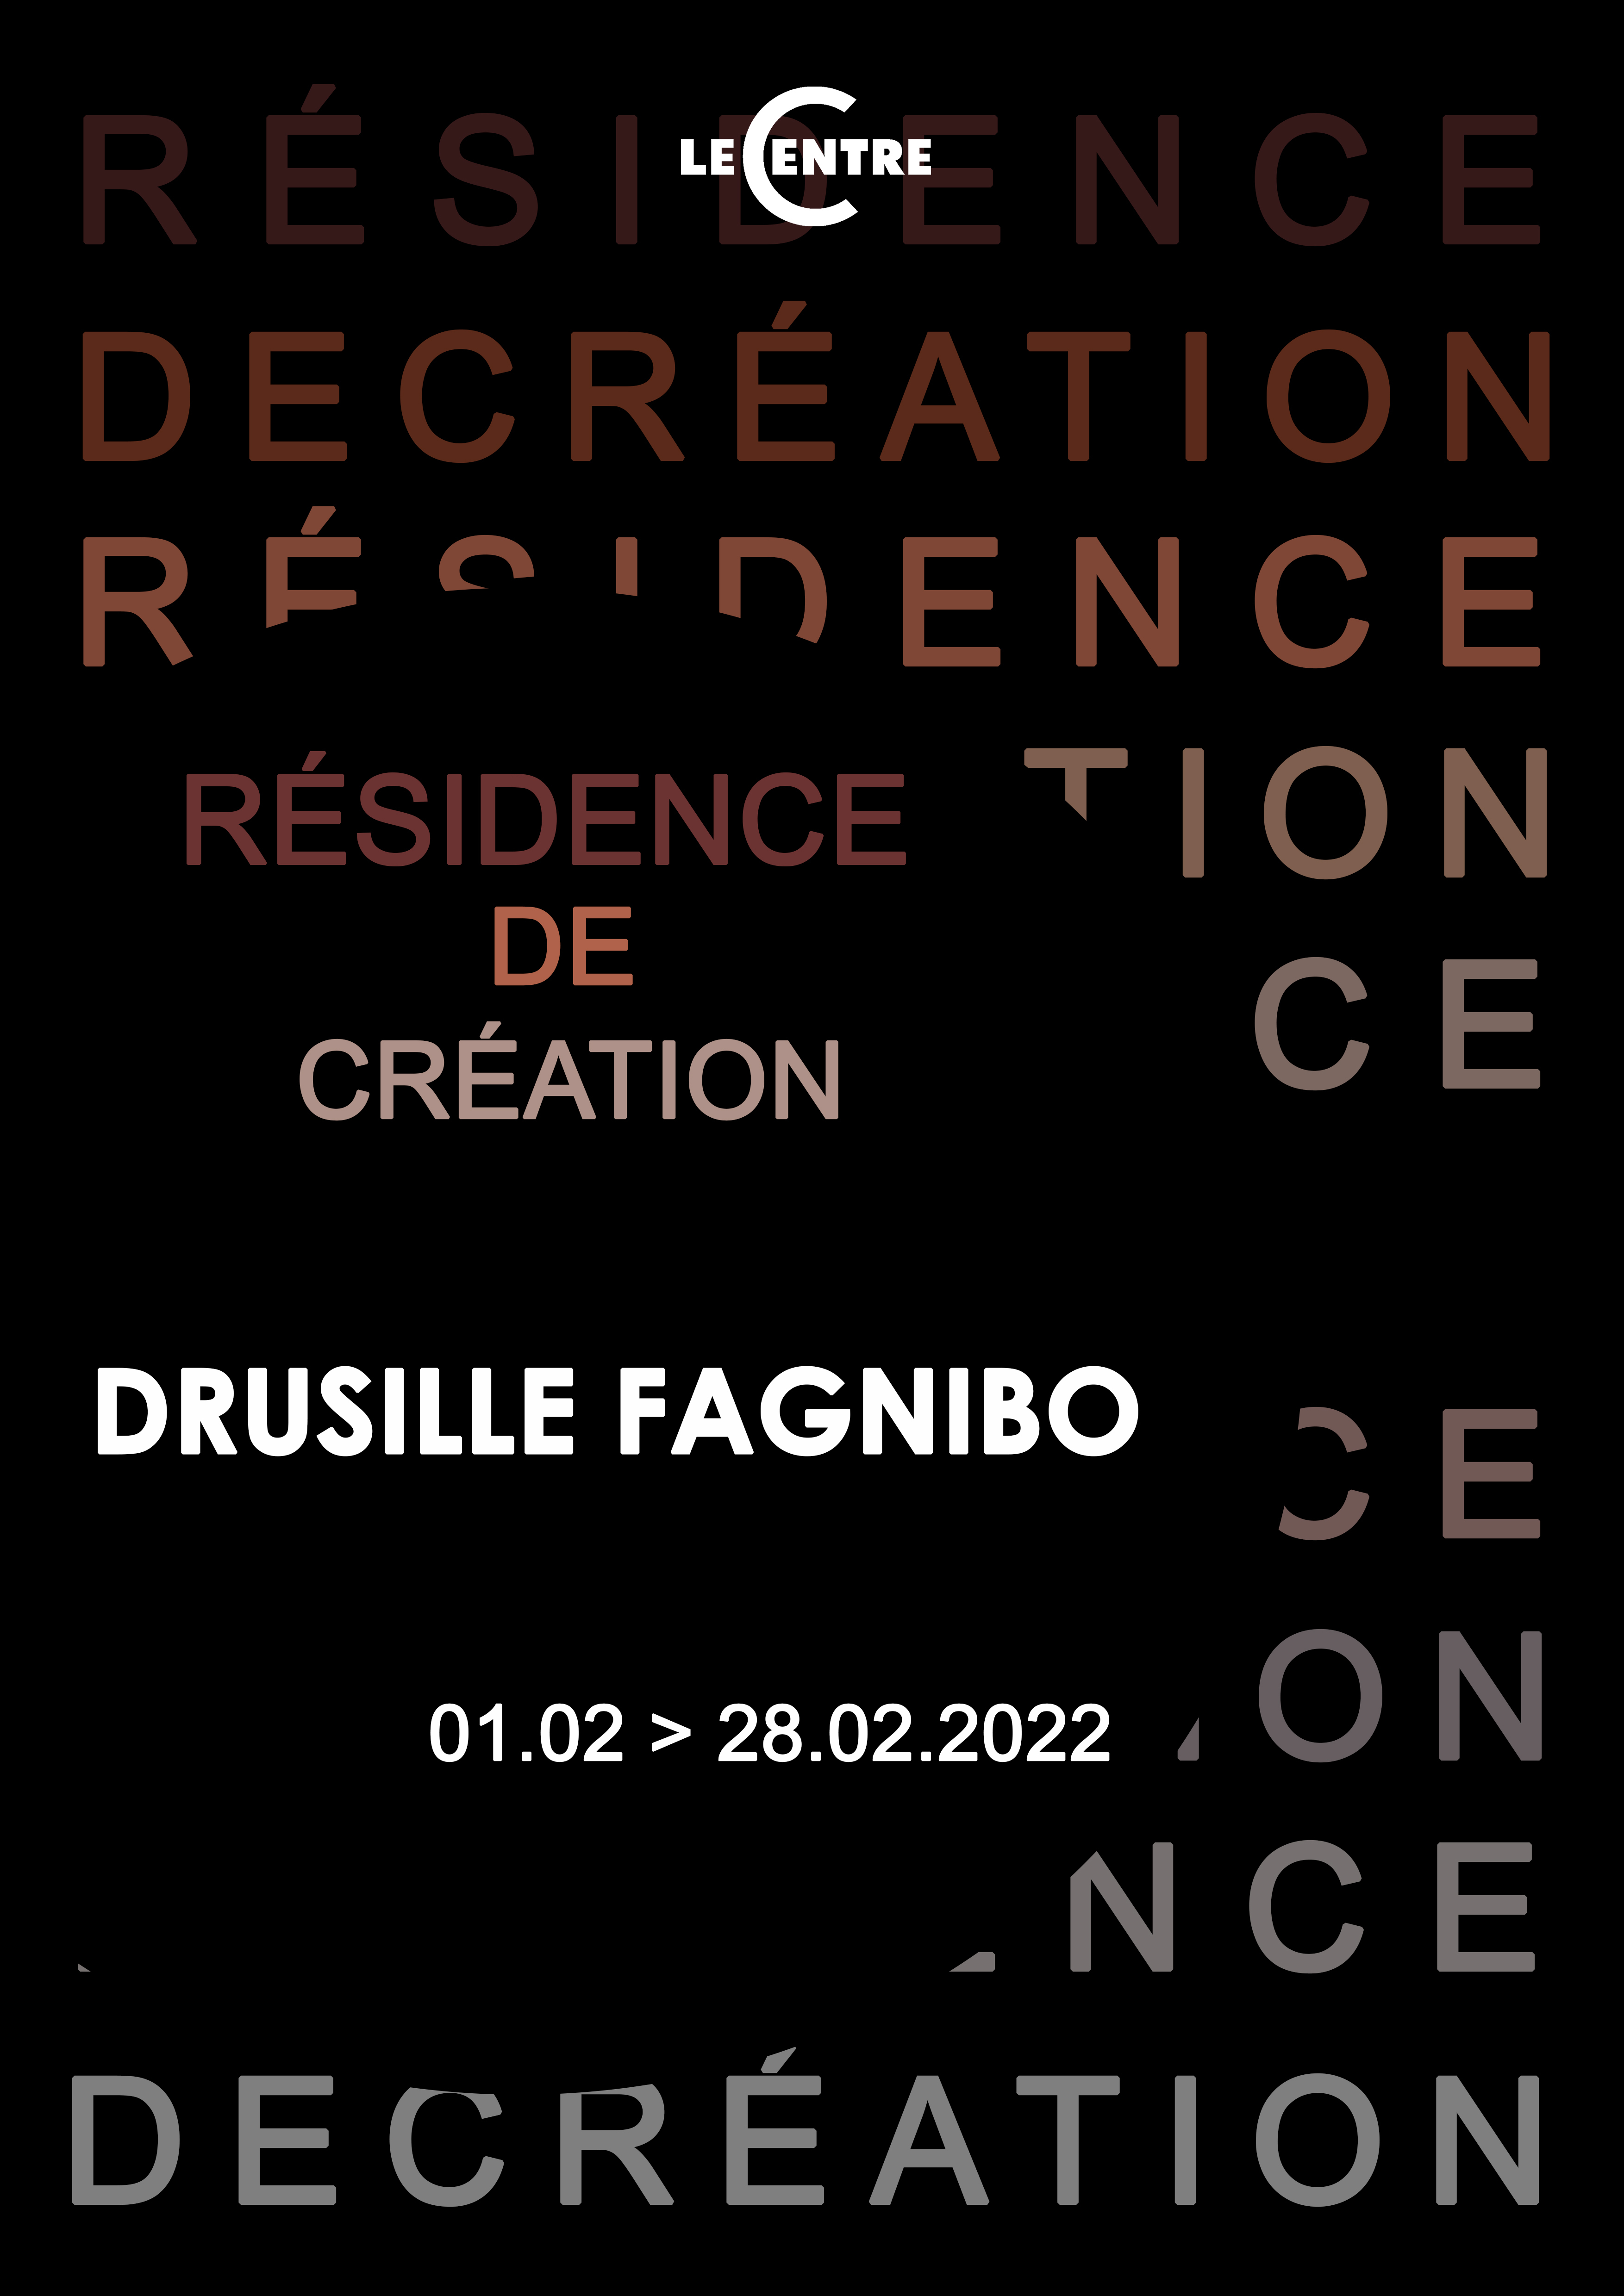 Drusille Fagnibo